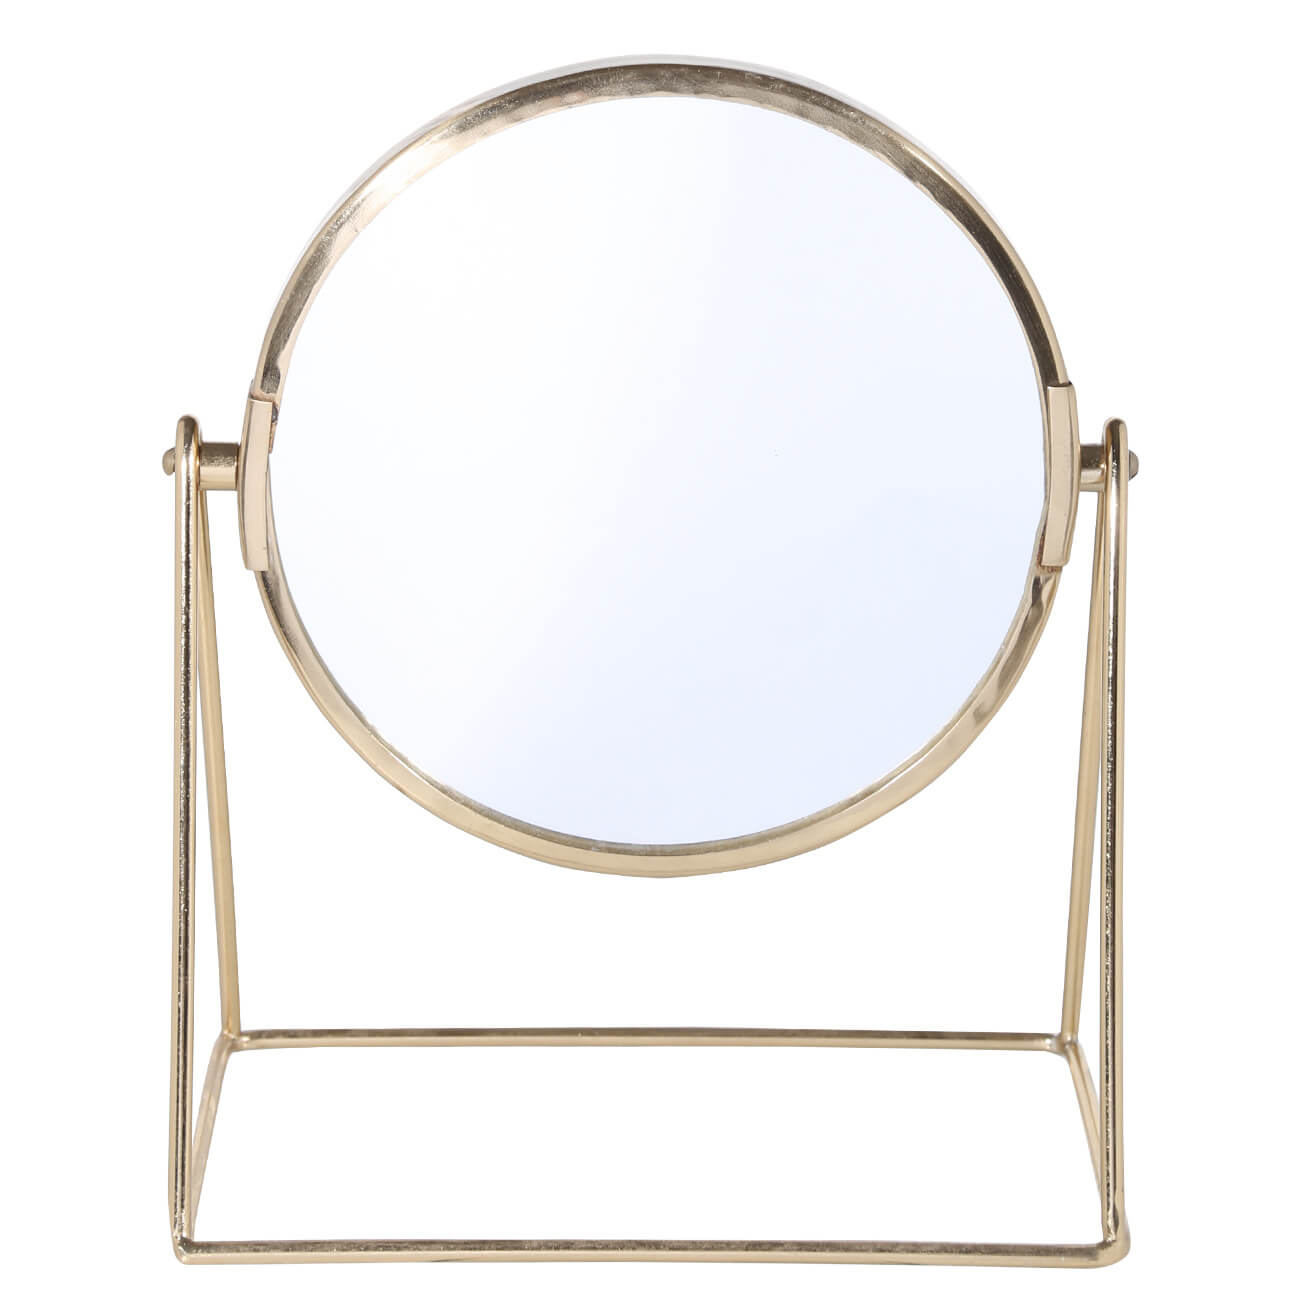 Зеркало настольное, 22 см, металл, круглое, золотистое, Trend изображение № 1